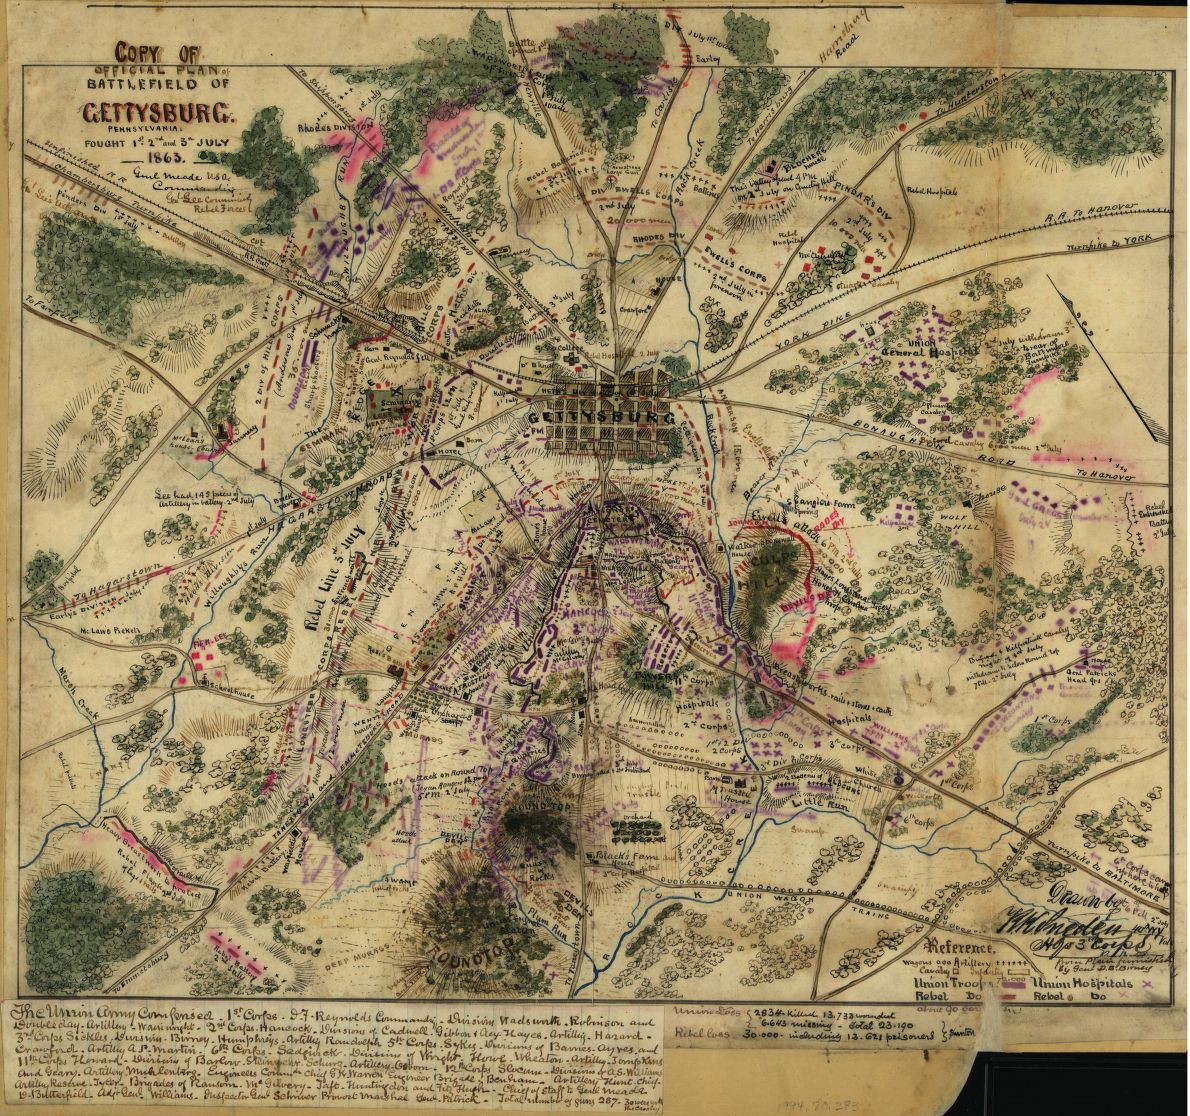 Map of Gettysburg